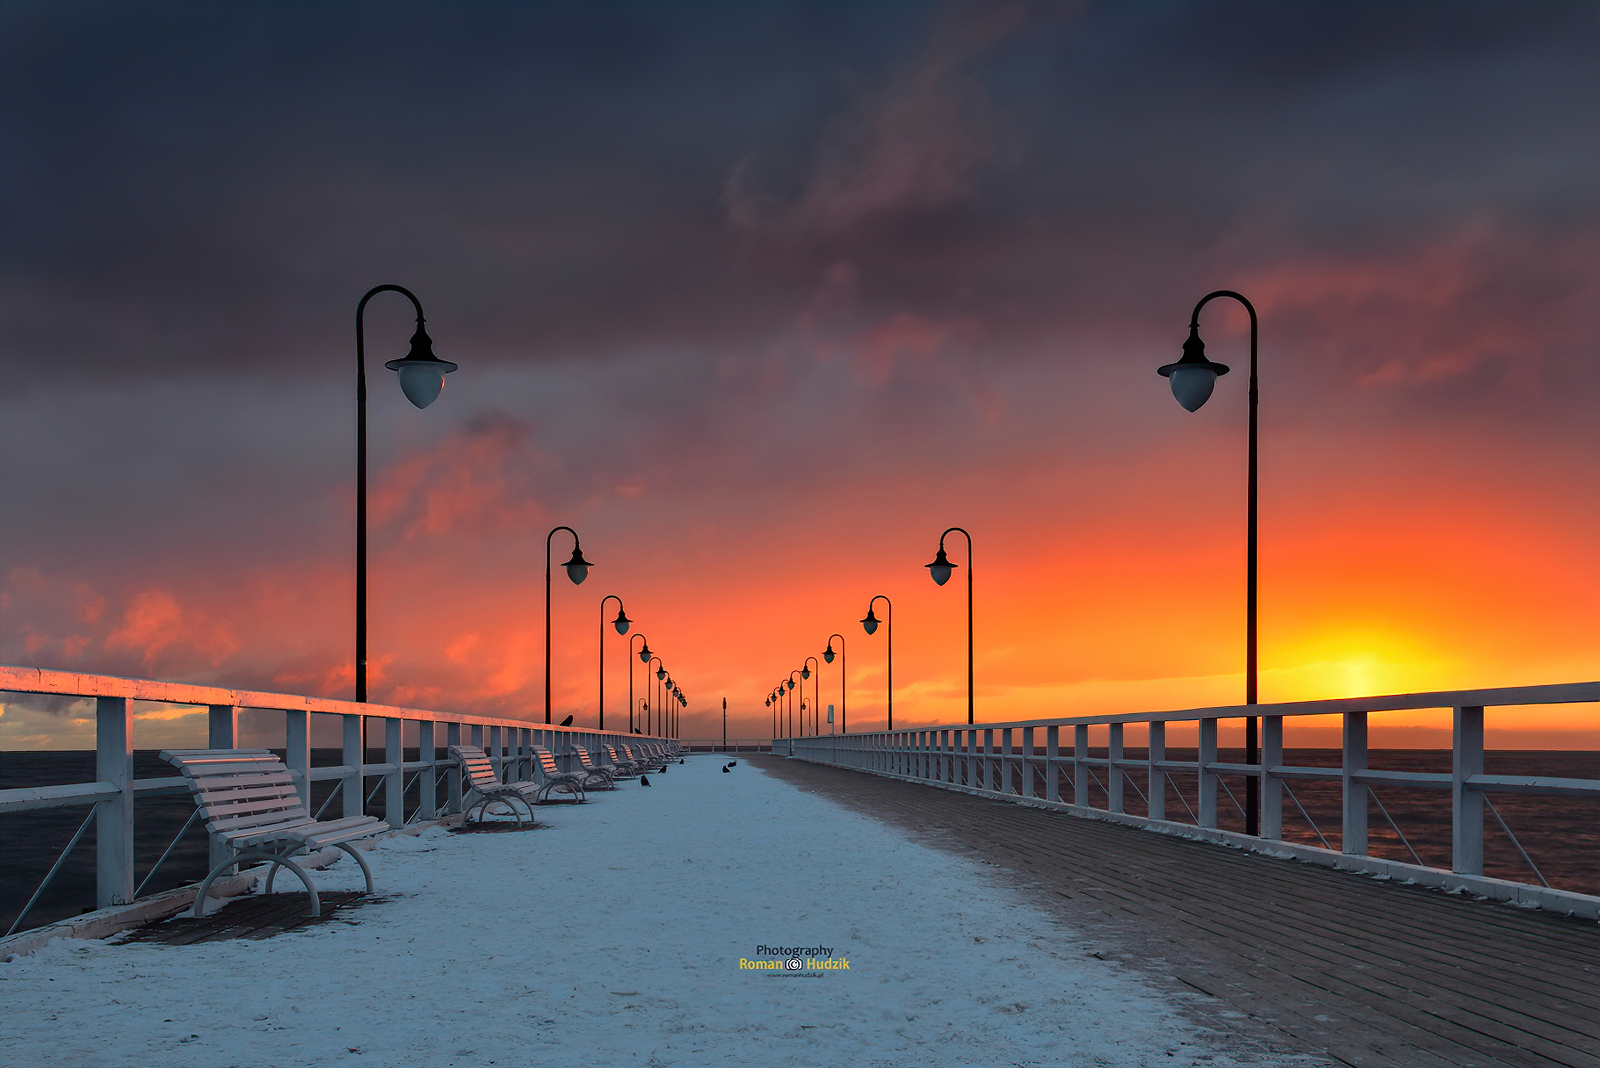 General 1600x1068 pier birds sunset snow covered winter photography outdoors warm light bench street light Roman Hudzik